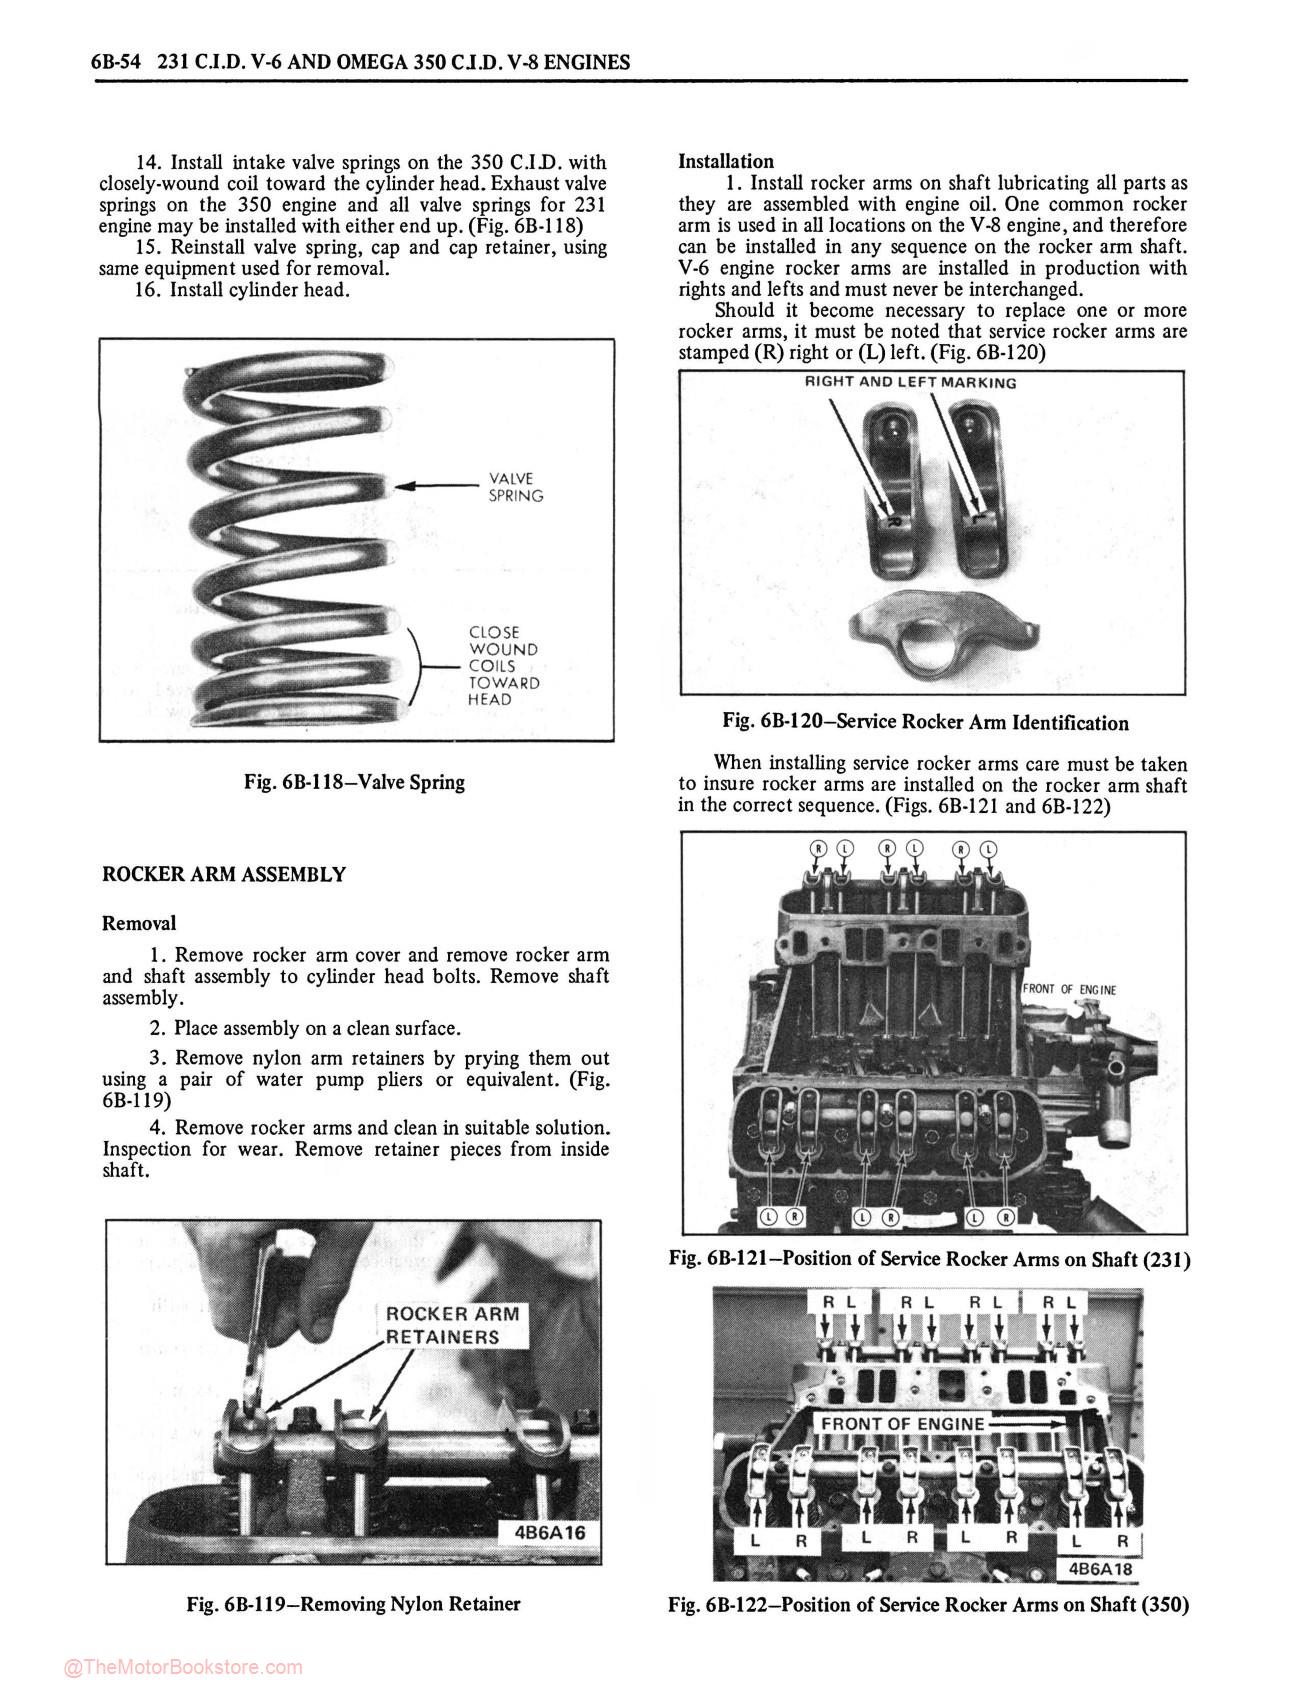 1976 Oldsmobile Service Repair Manual - Sample Page 1